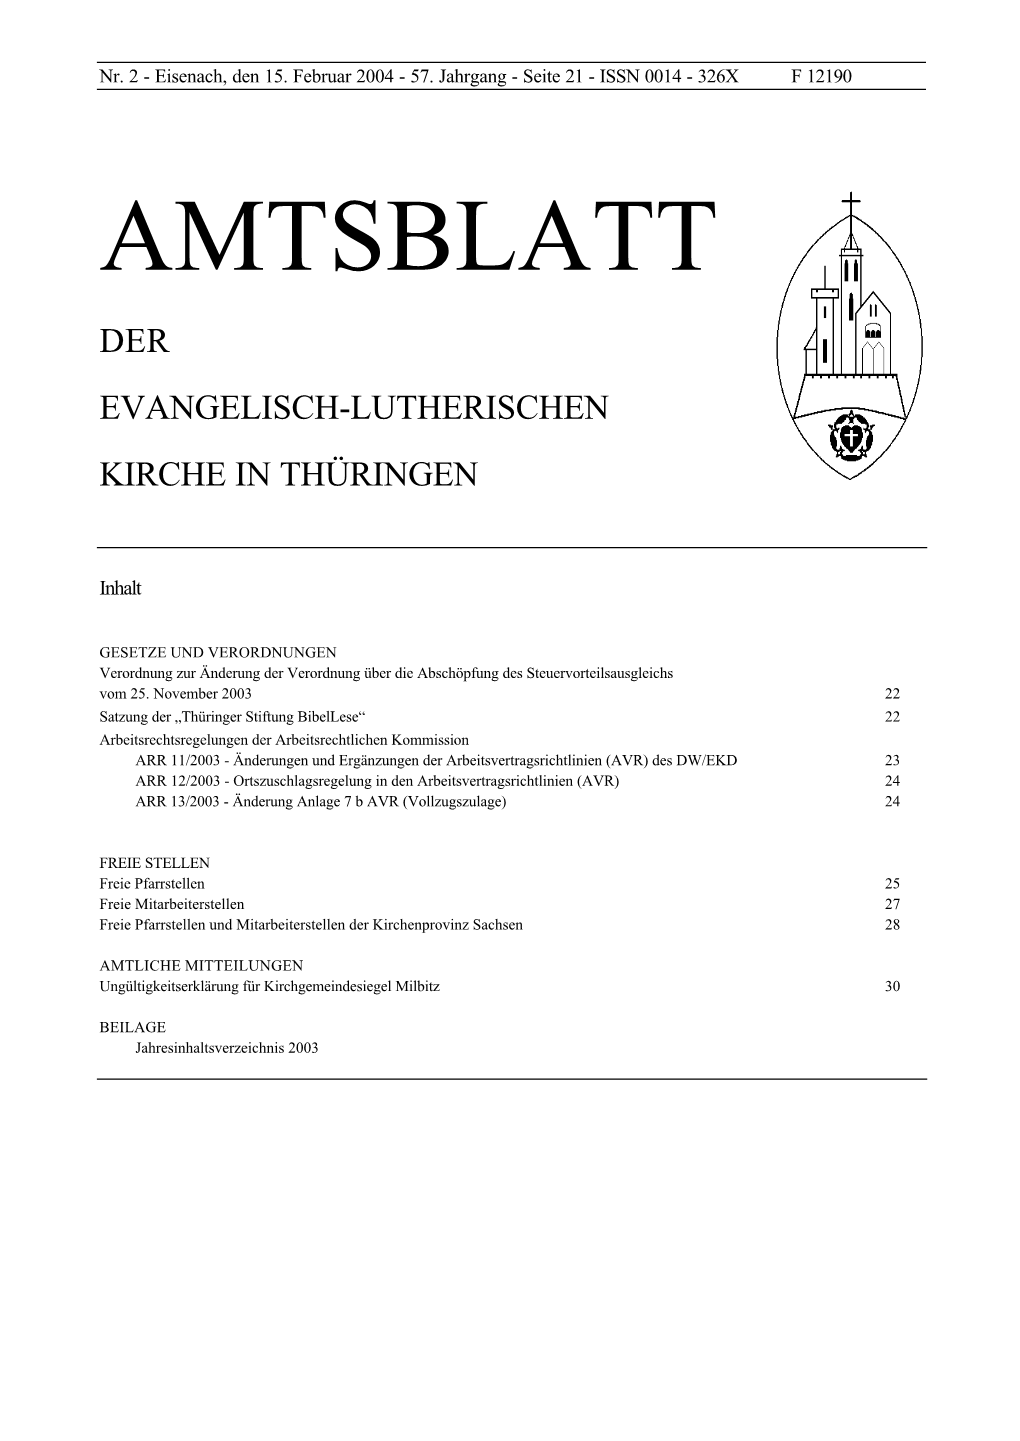 Amtsblatt Der Evangelisch-Lutherischen Kirche in Thüringen